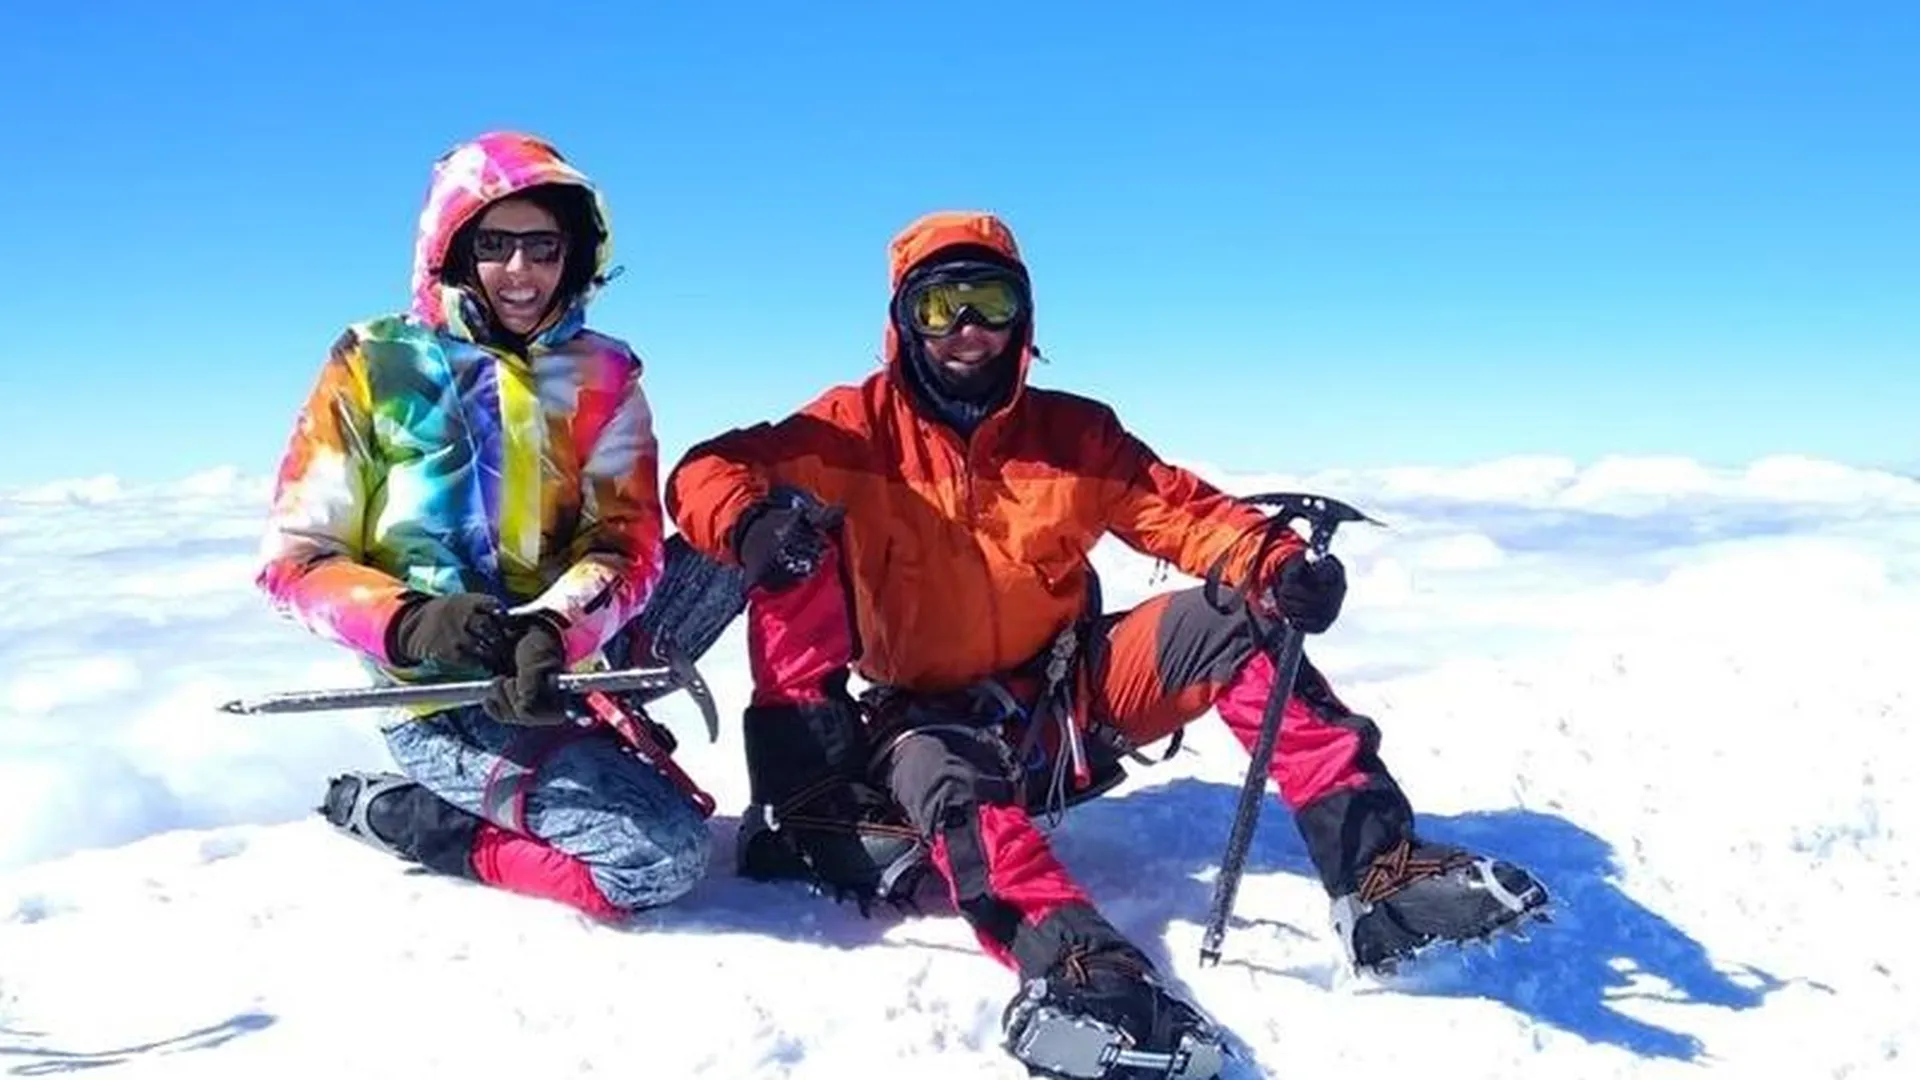 От вершины Эльбруса до Казбека за 8 дней: альпинисты из Кубинки установили мировой рекорд